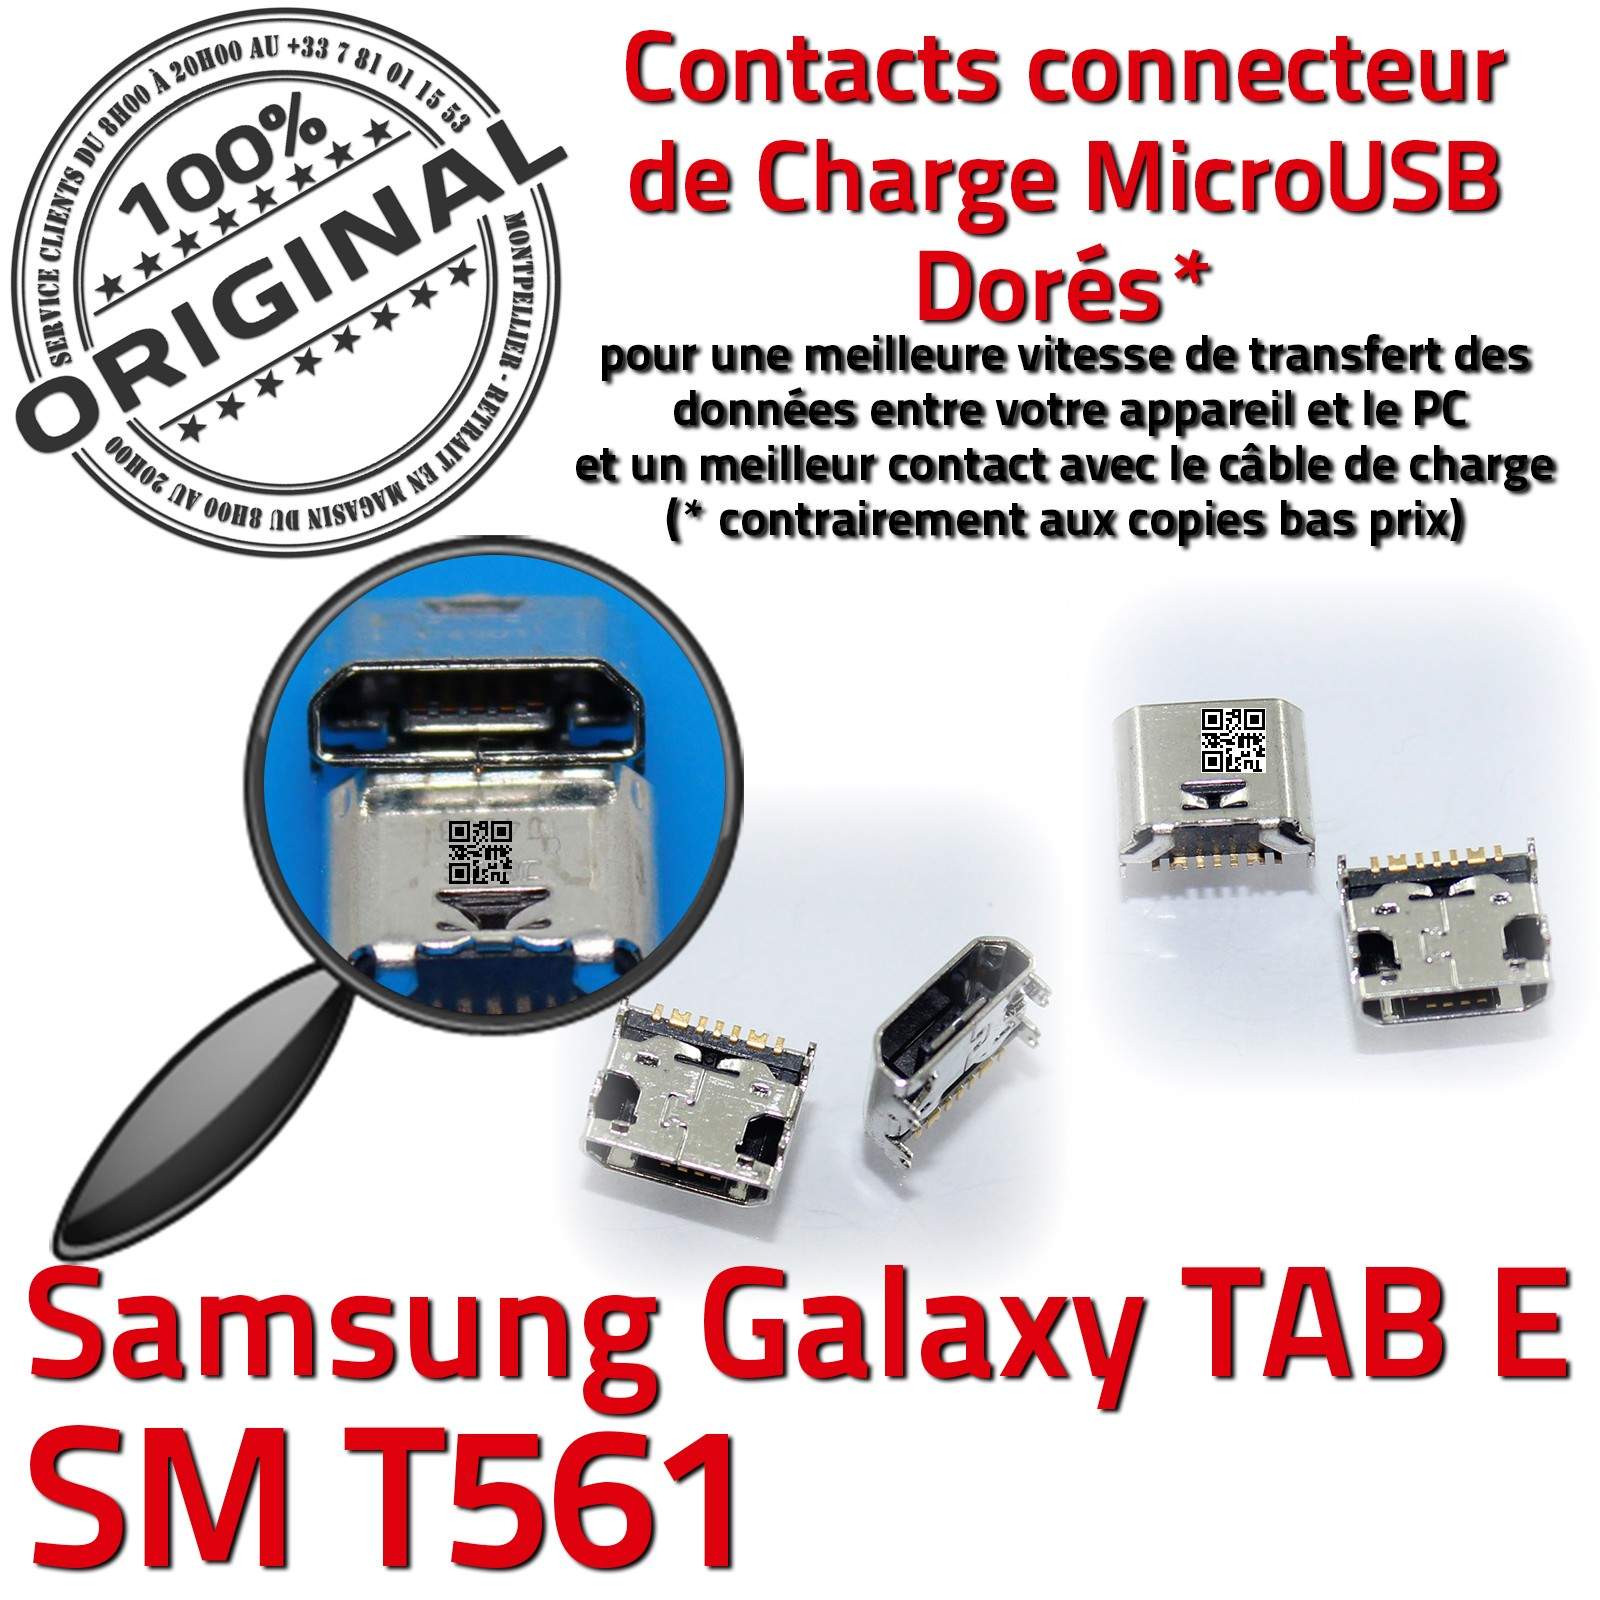 ORIGINAL Samsung Galaxy TAB E SM T561 Connecteur de charge à souder Micro USB Pins Dorés Dock Prise Connector Chargeur 9 inch